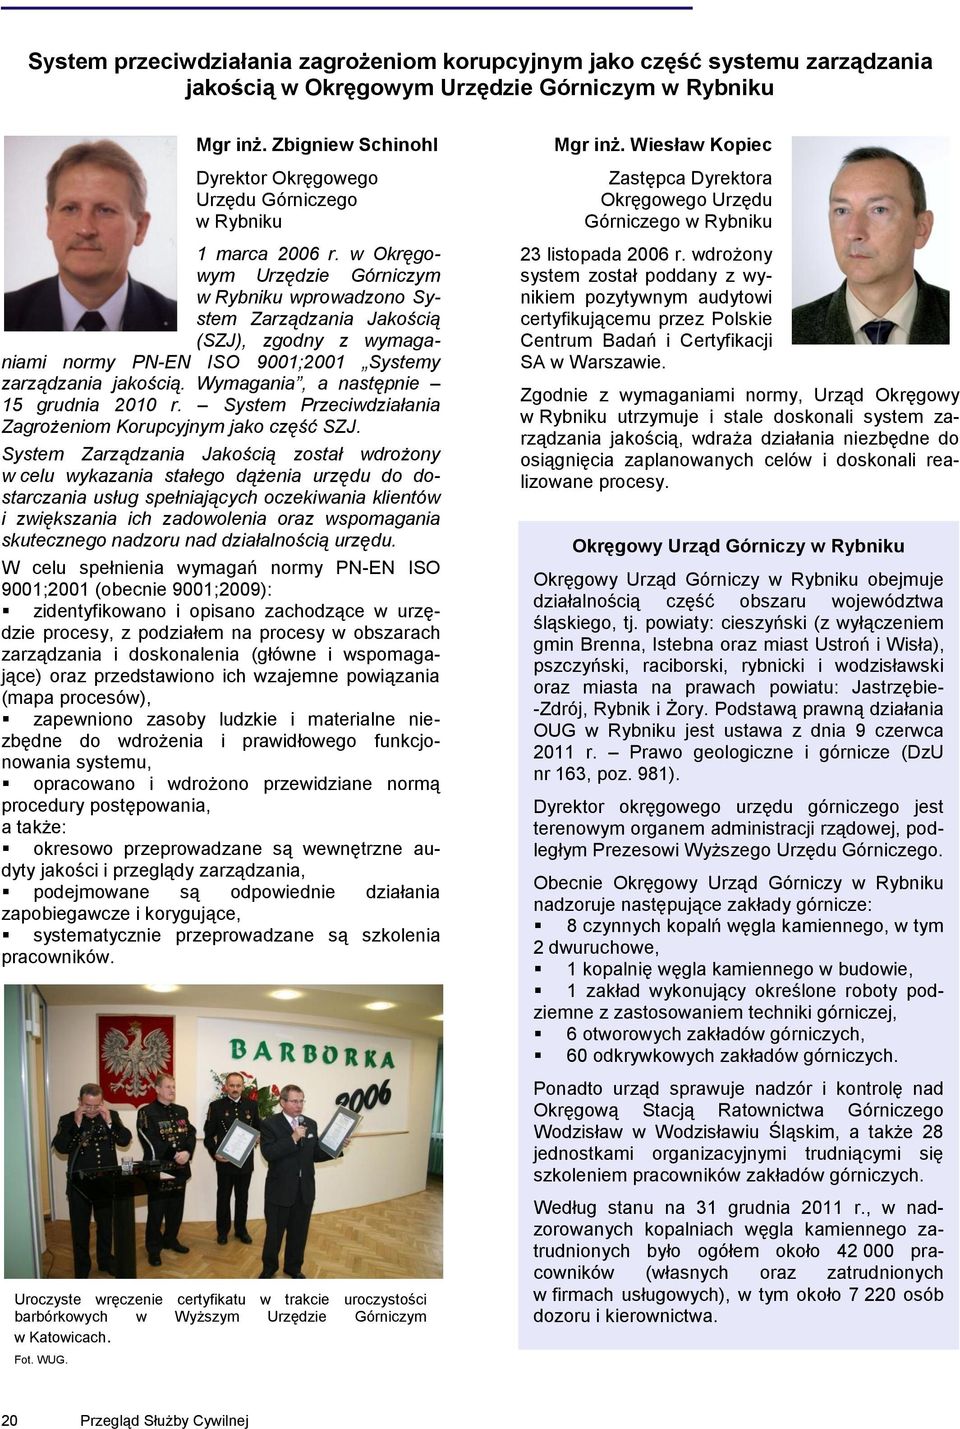 w Okręgowym Urzędzie Górniczym w Rybniku wprowadzono System Zarządzania Jakością (SZJ), zgodny z wymaganiami normy PN-EN ISO 9001;2001 Systemy zarządzania jakością.